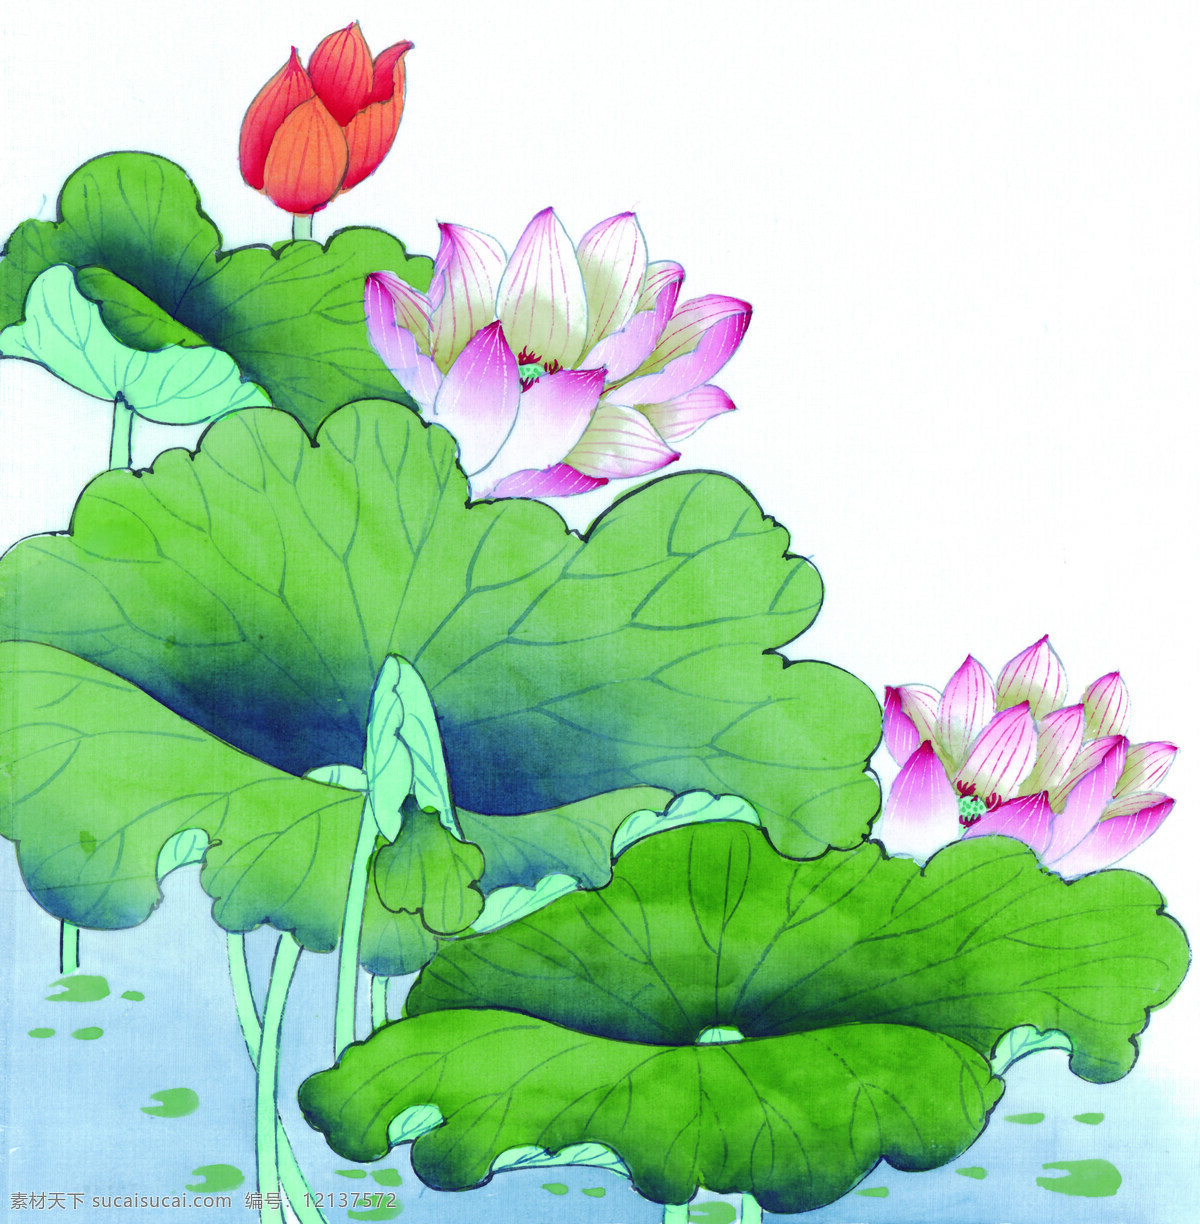 花卉图案 中国画 花草图案 静物画 书画美术 设计素材 静物画篇 中国画篇 白色